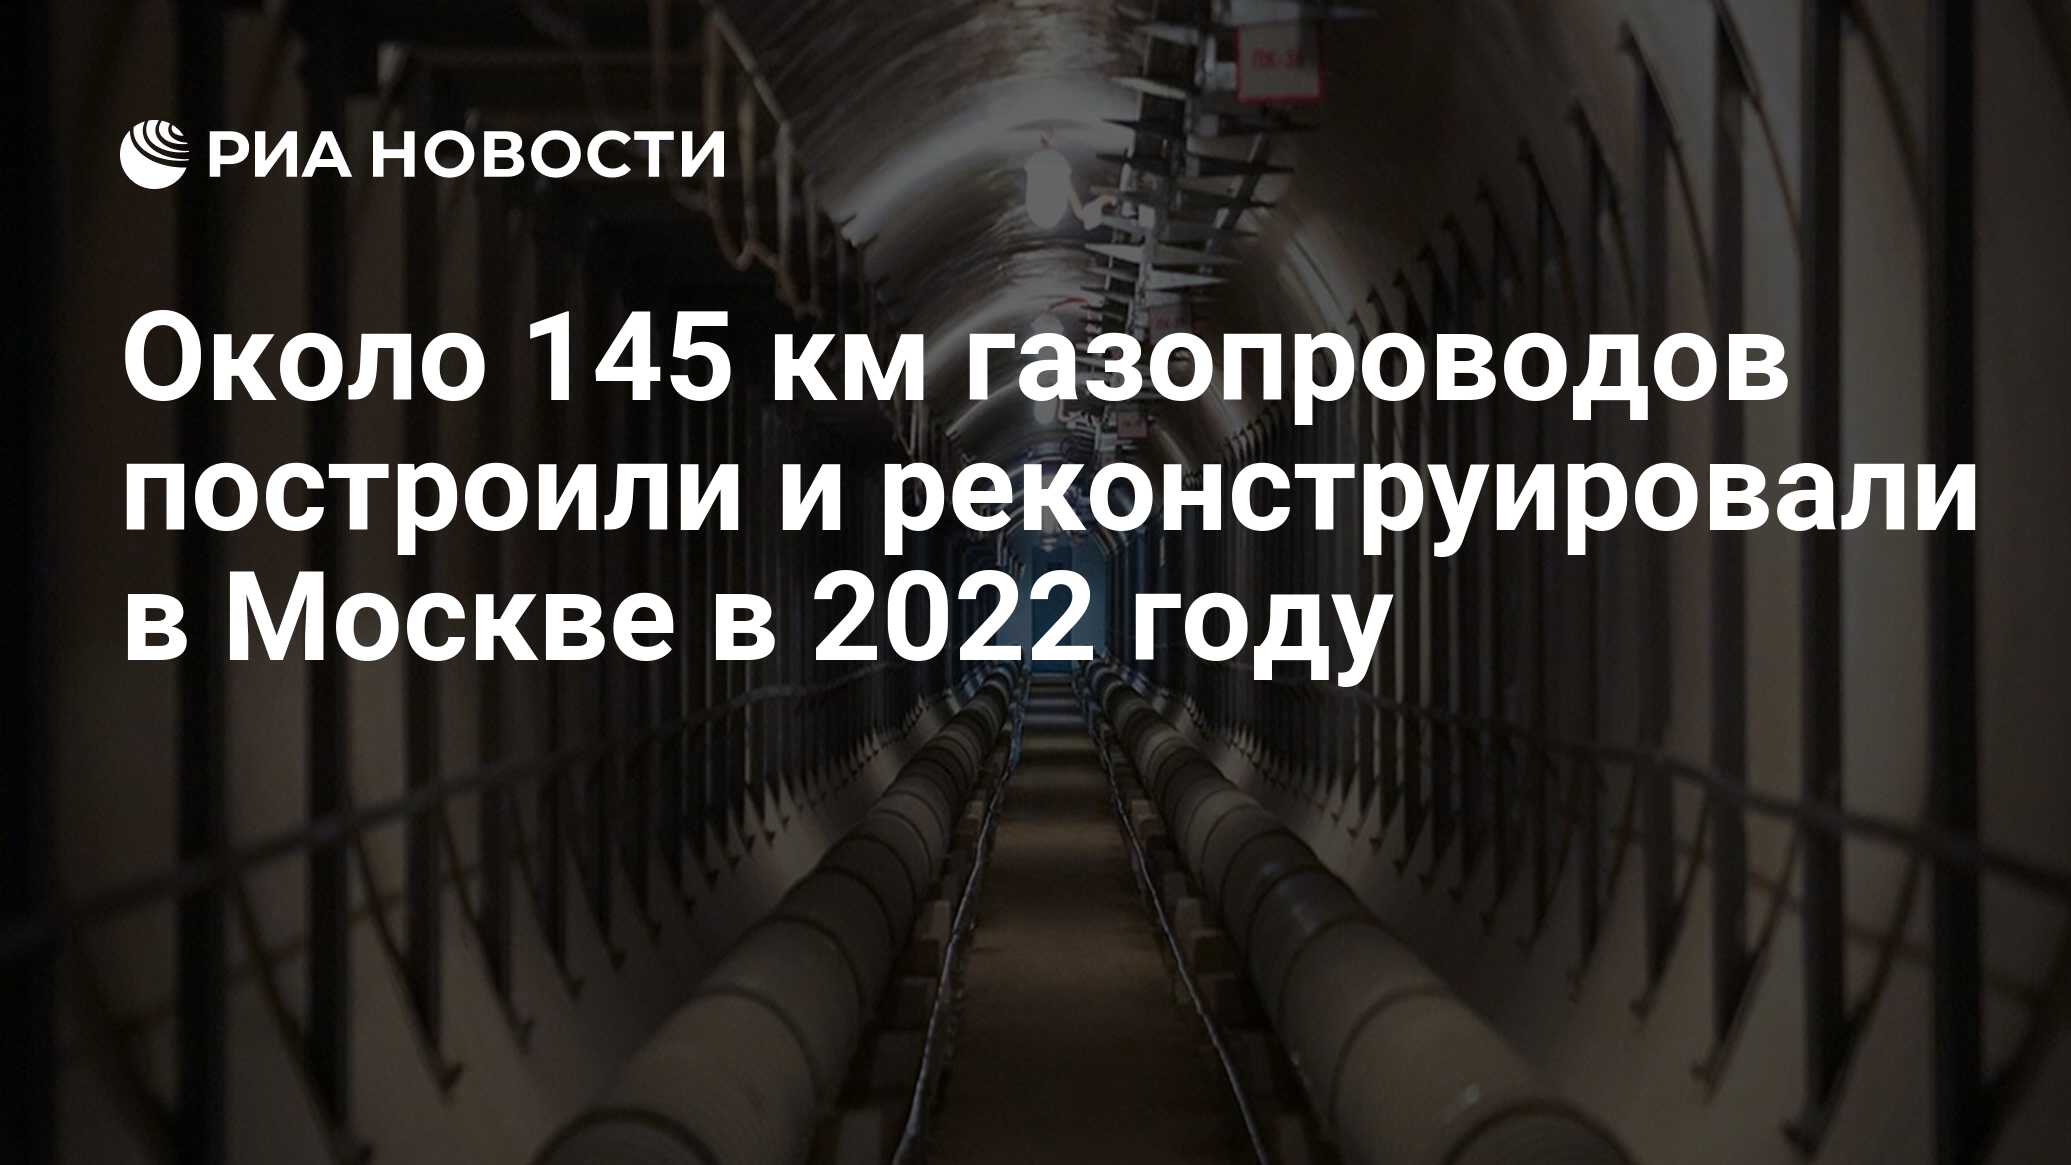 Газопровод. Газовые магистрали в Москве. Газовые трубы в Европу в 2023 году на карте Москвы. Баловать газопровод километр